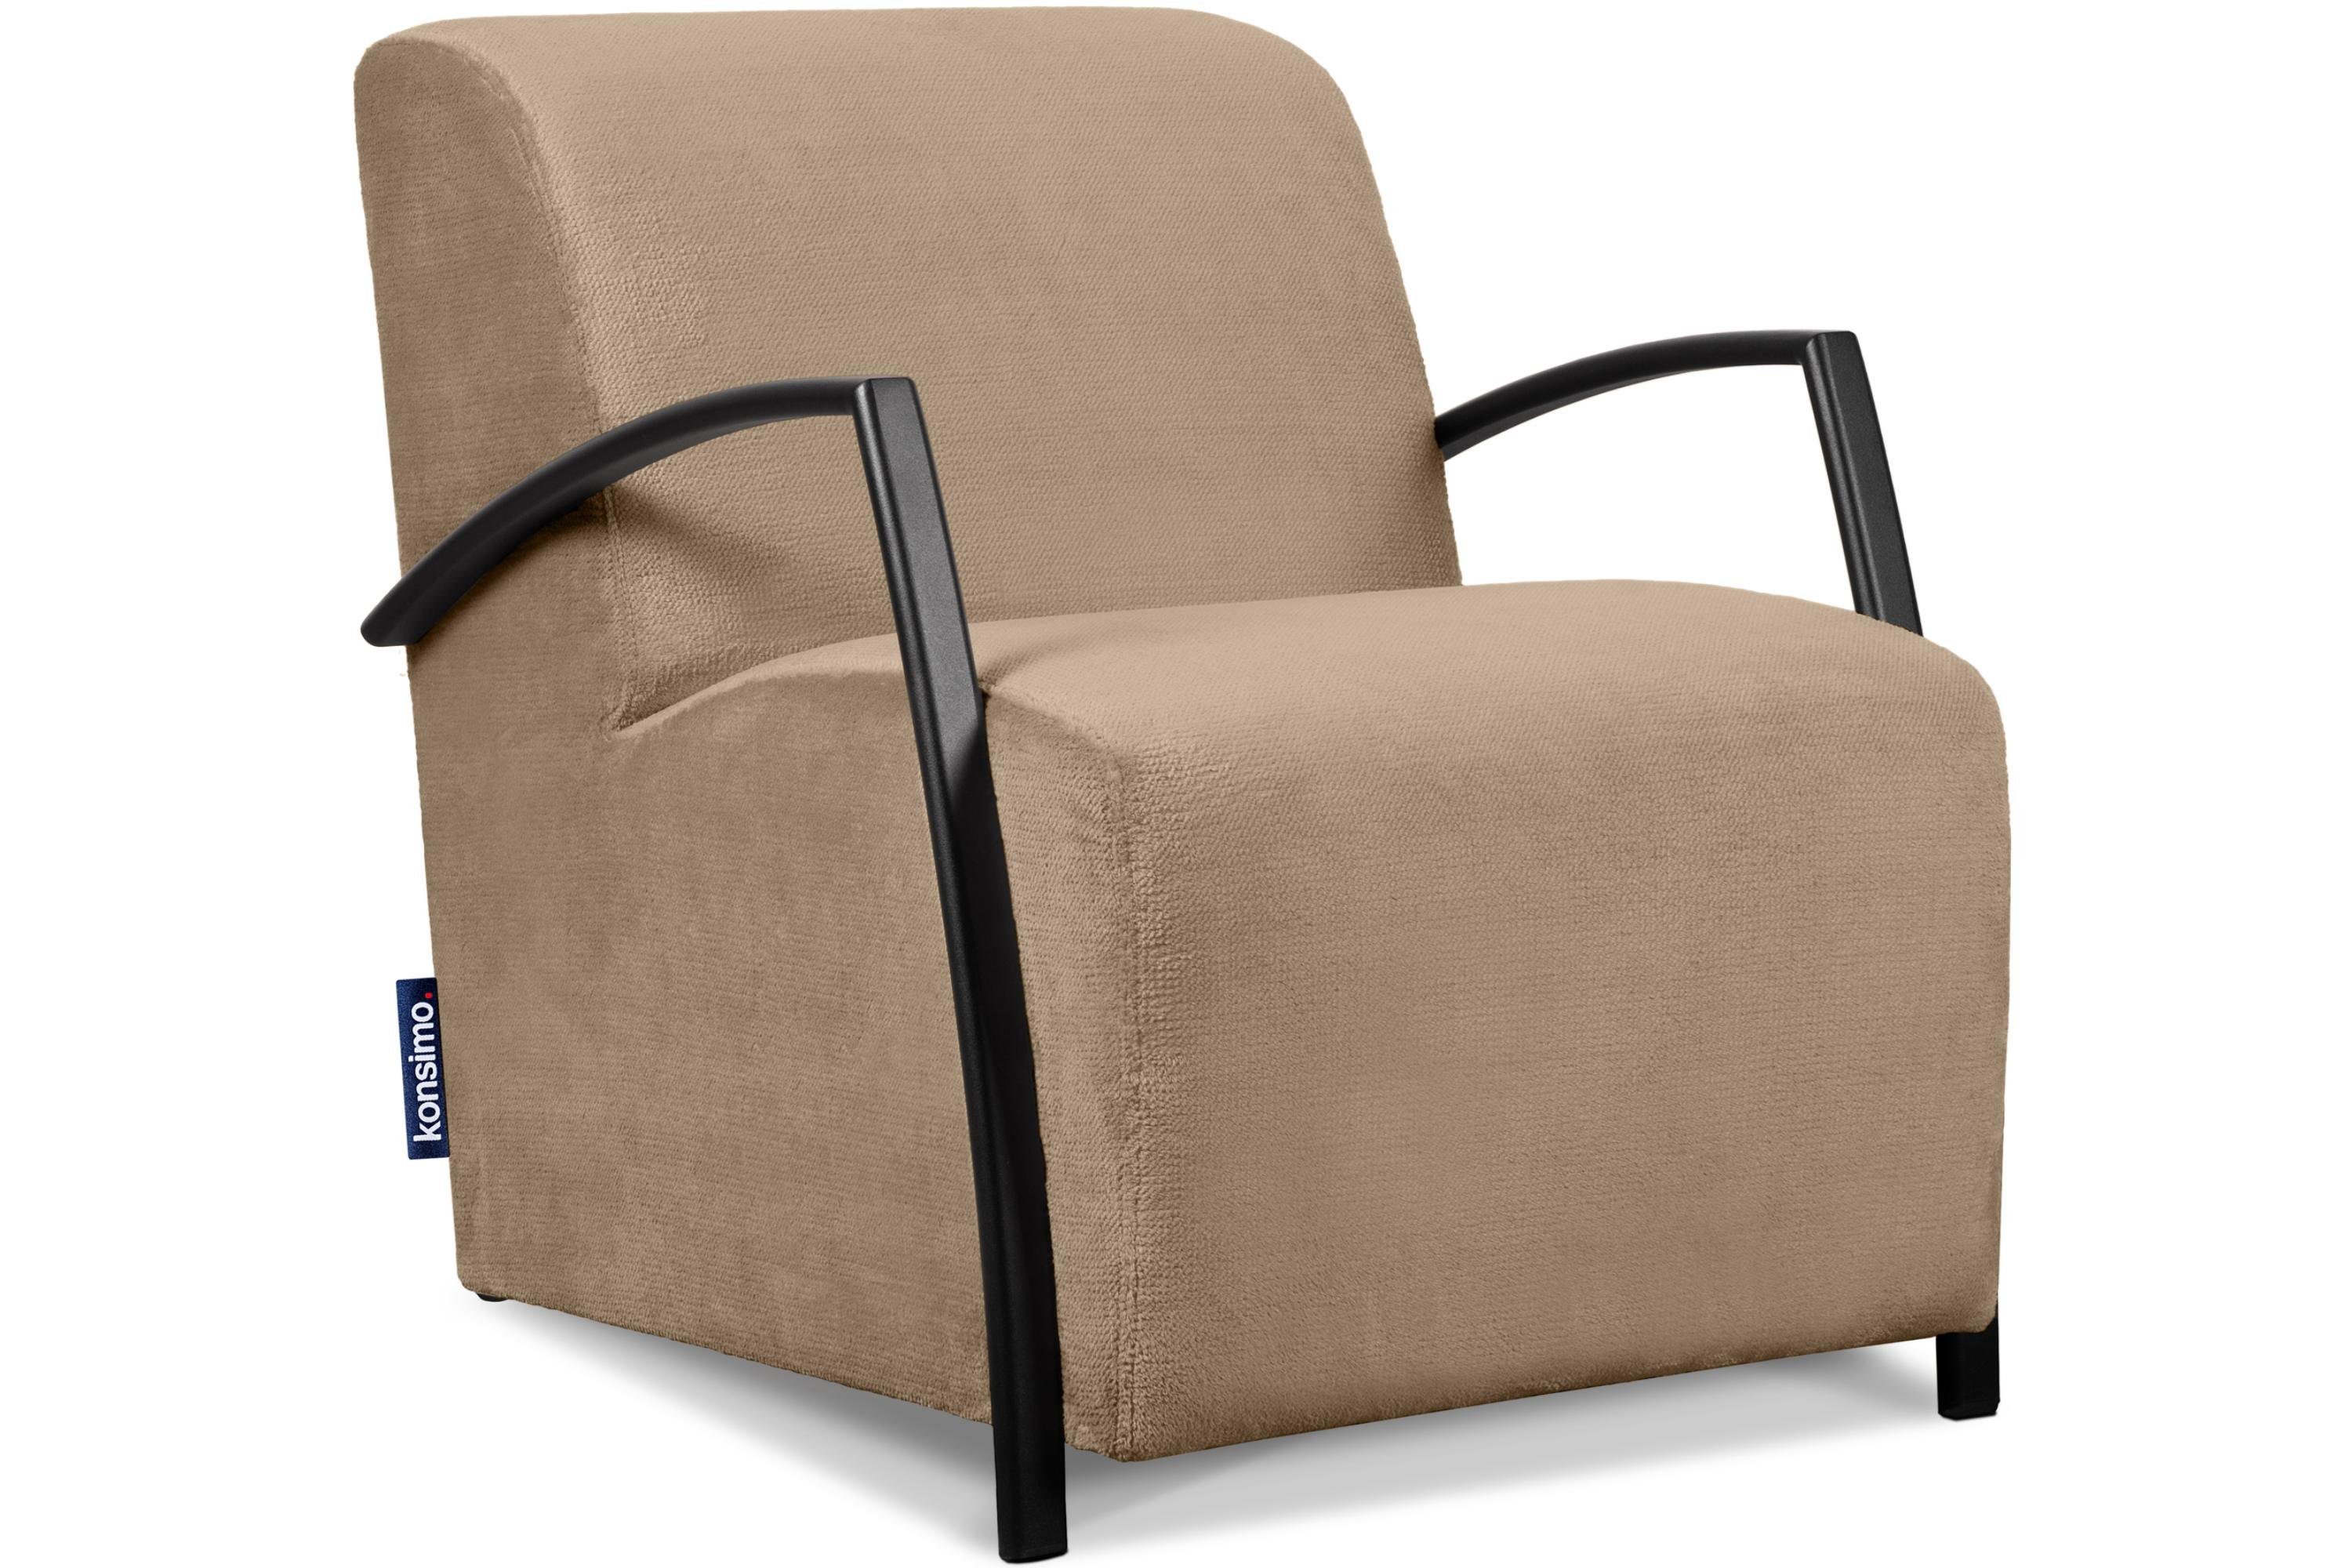 Konsimo Cocktailsessel CARO Sessel, mit gewellter Feder im Sitz, ergonomische Form für bequemes Sitzen